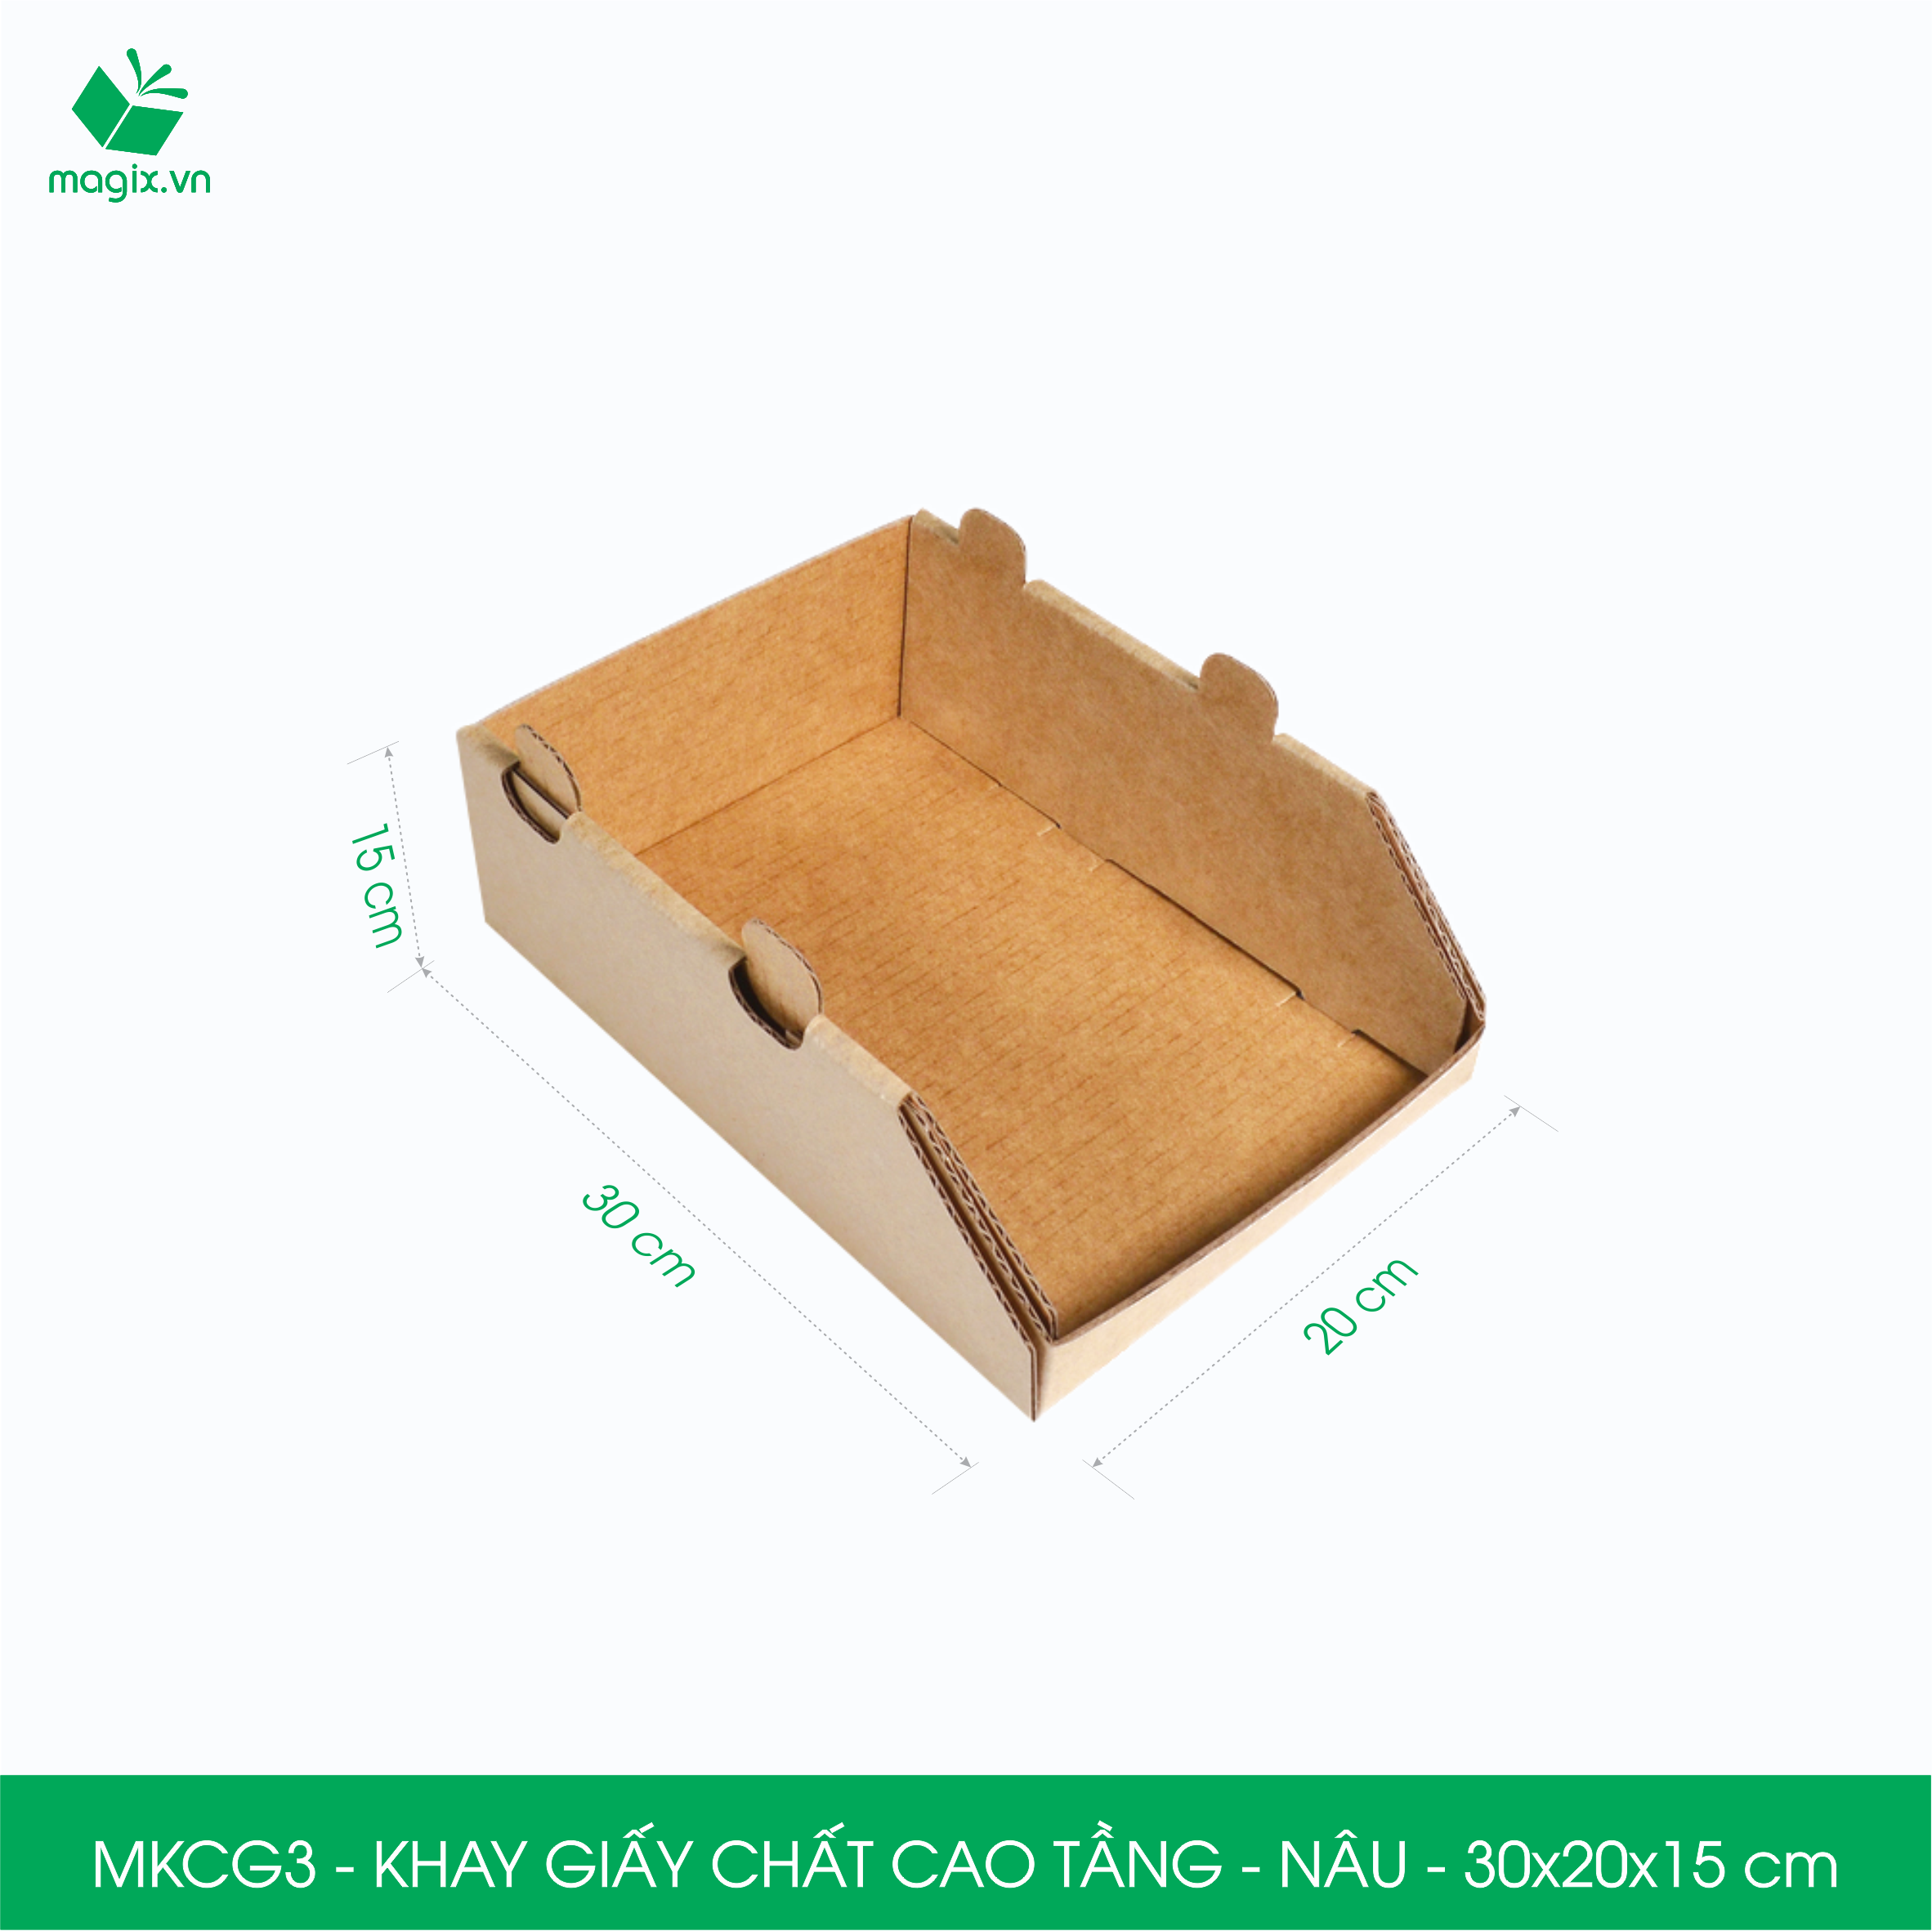 MKCG3 - 30x20x15 cm - 50 Khay giấy chất cao tầng bằng giấy carton siêu cứng, kệ giấy đựng đồ văn phòng, khay đựng dụng cụ, khay linh kiện, kệ phân loại dụng cụ